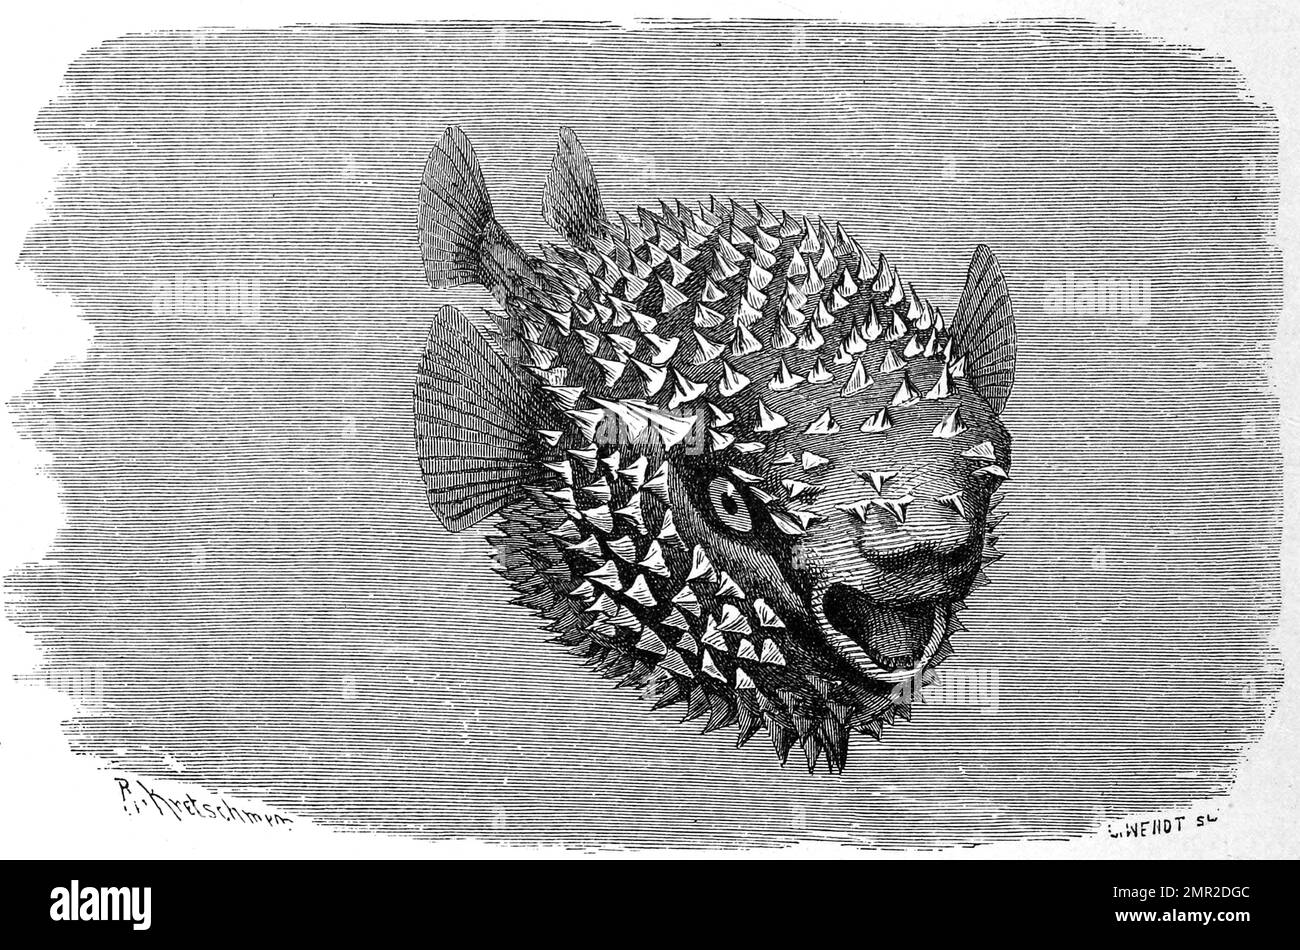 Fisch, Gepunktoner oder Gewöhnlicher Igelfisch, Diodon hystrix, Historisch, ristorante digitale Reproduktion von einer Vorlage aus dem 19. Jahrhundert Foto Stock